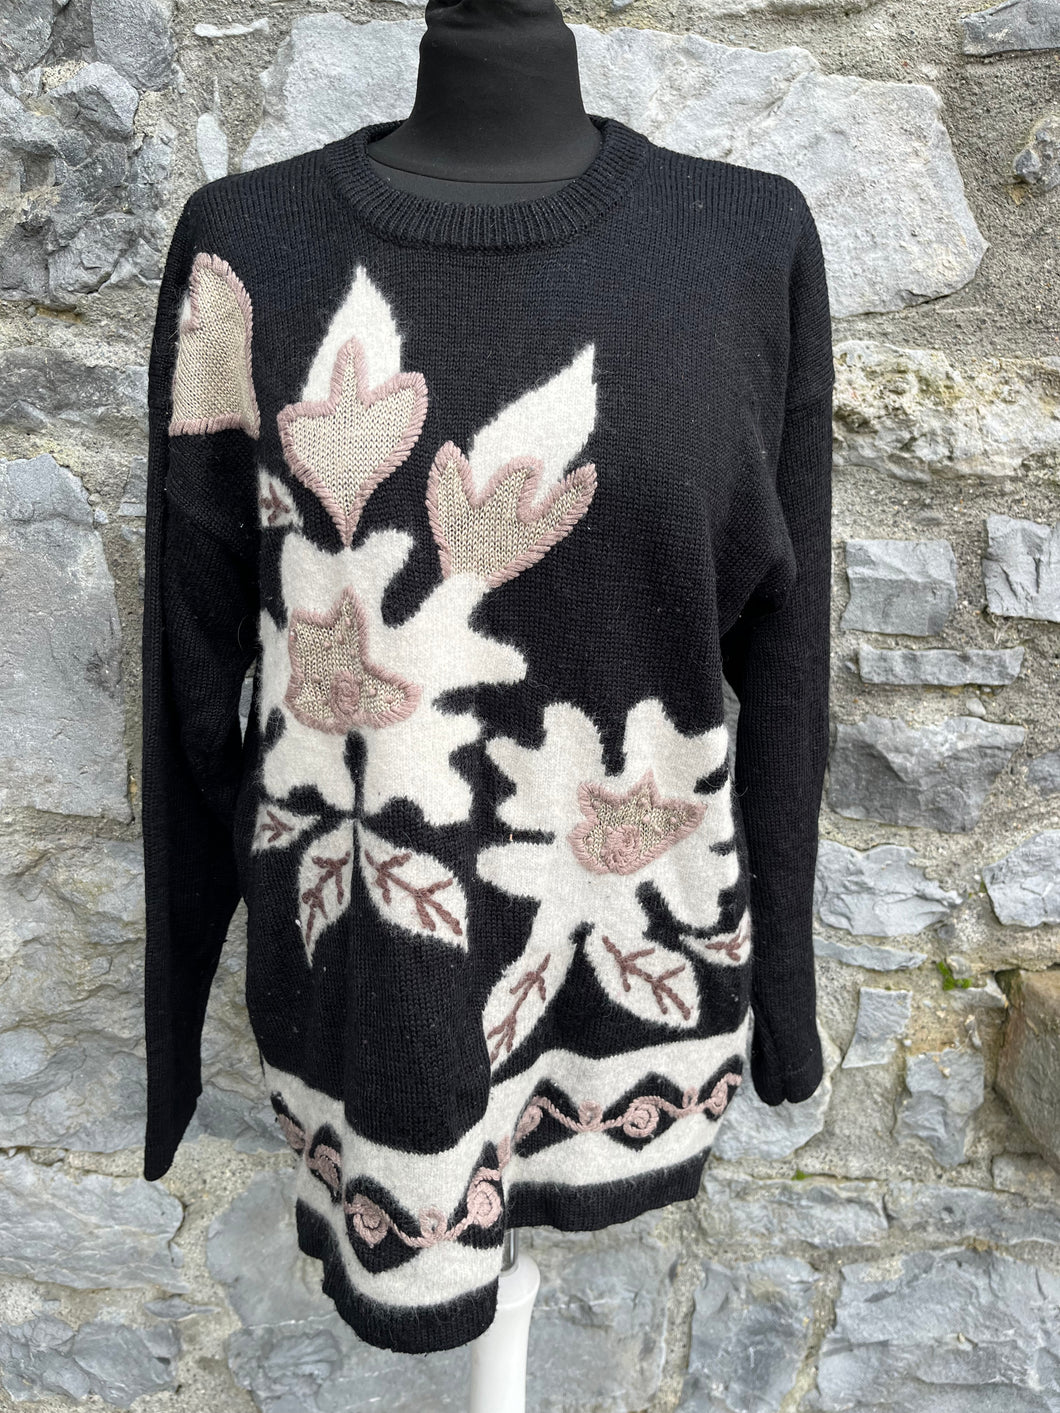 90s black floral jumper uk 14-16